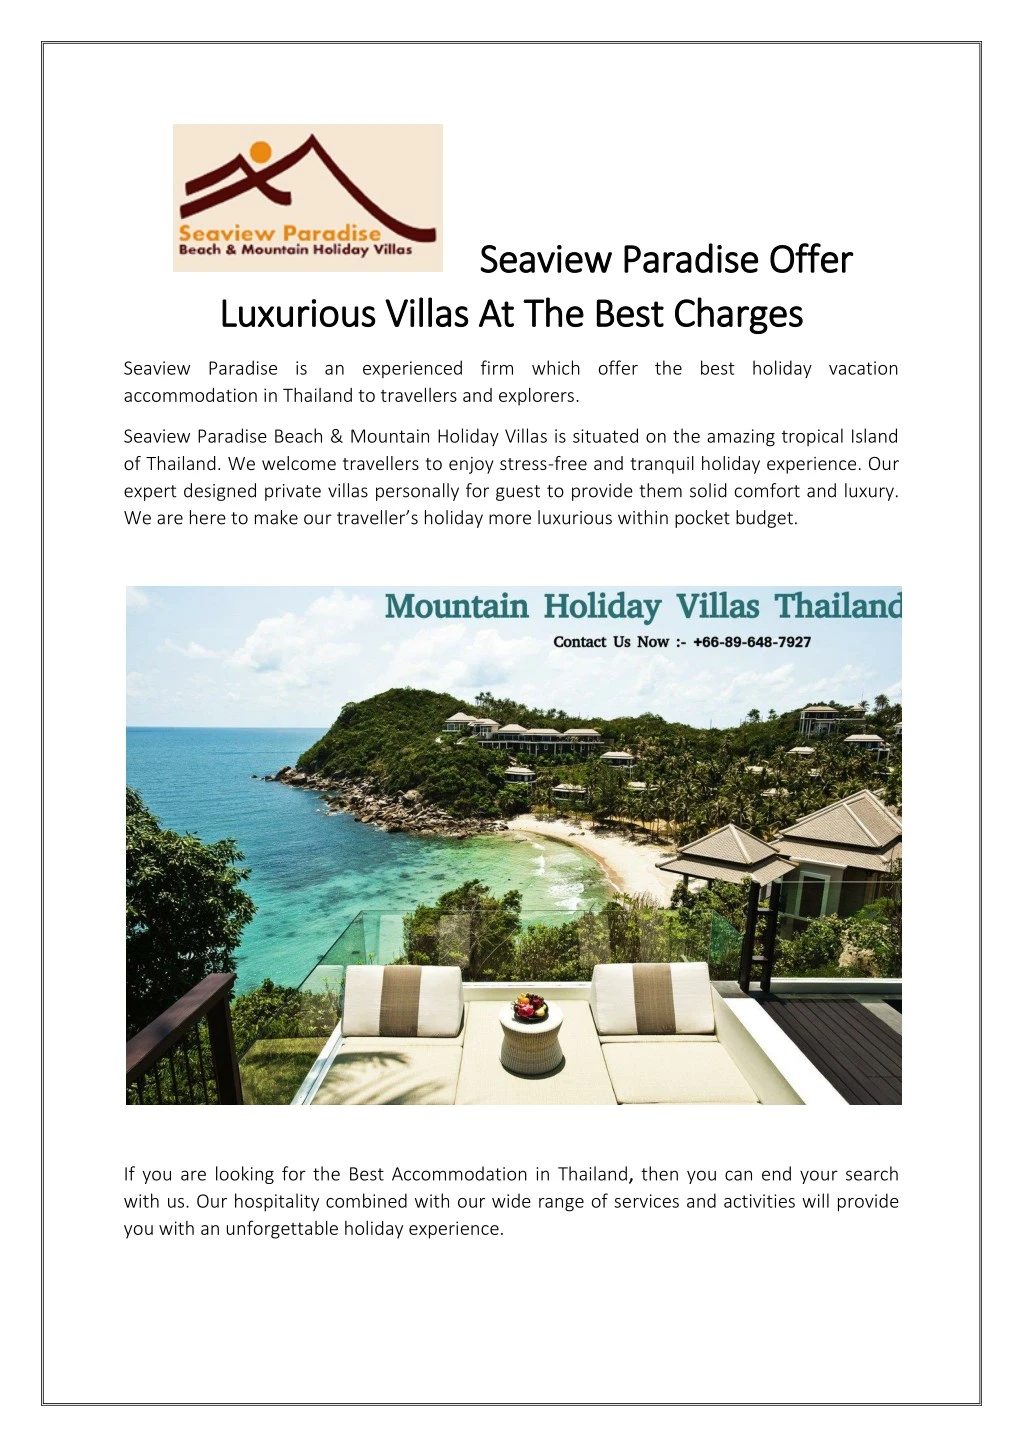 seaview paradise offer seaview paradise offer